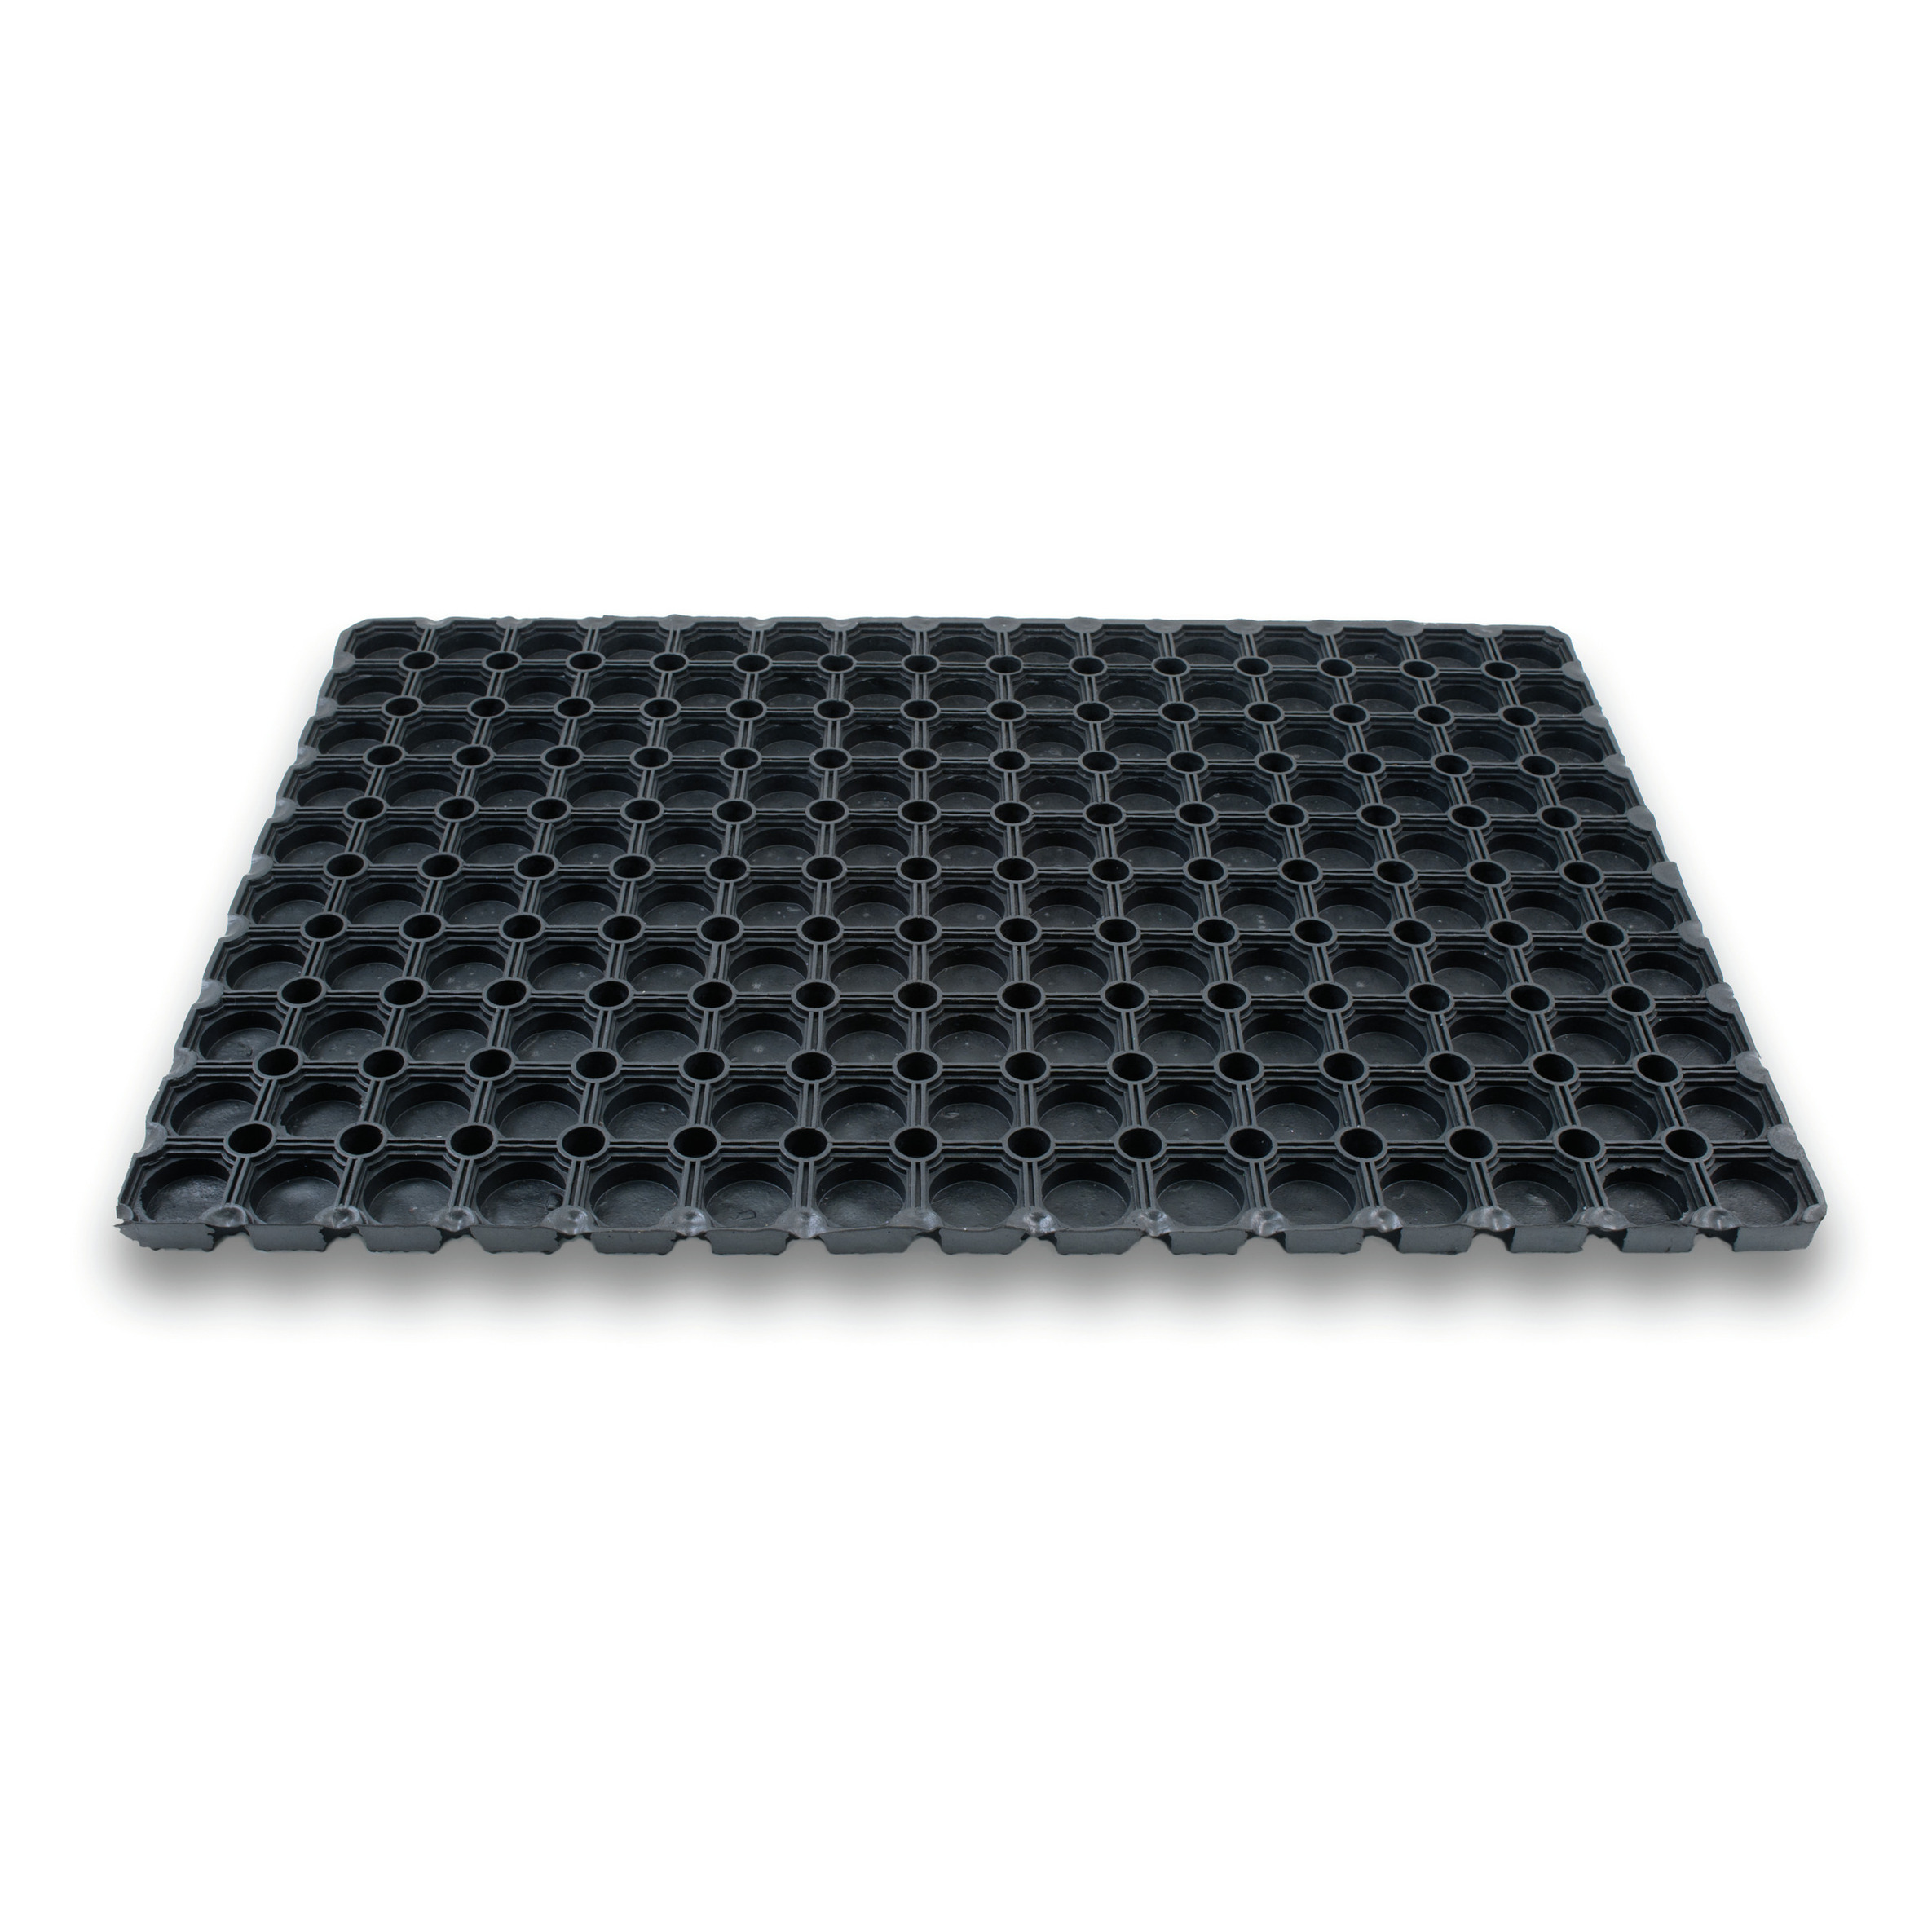 1x Rubberen deurmatten/schoonloopmatten zwart 40 x 60 cm rechthoekig